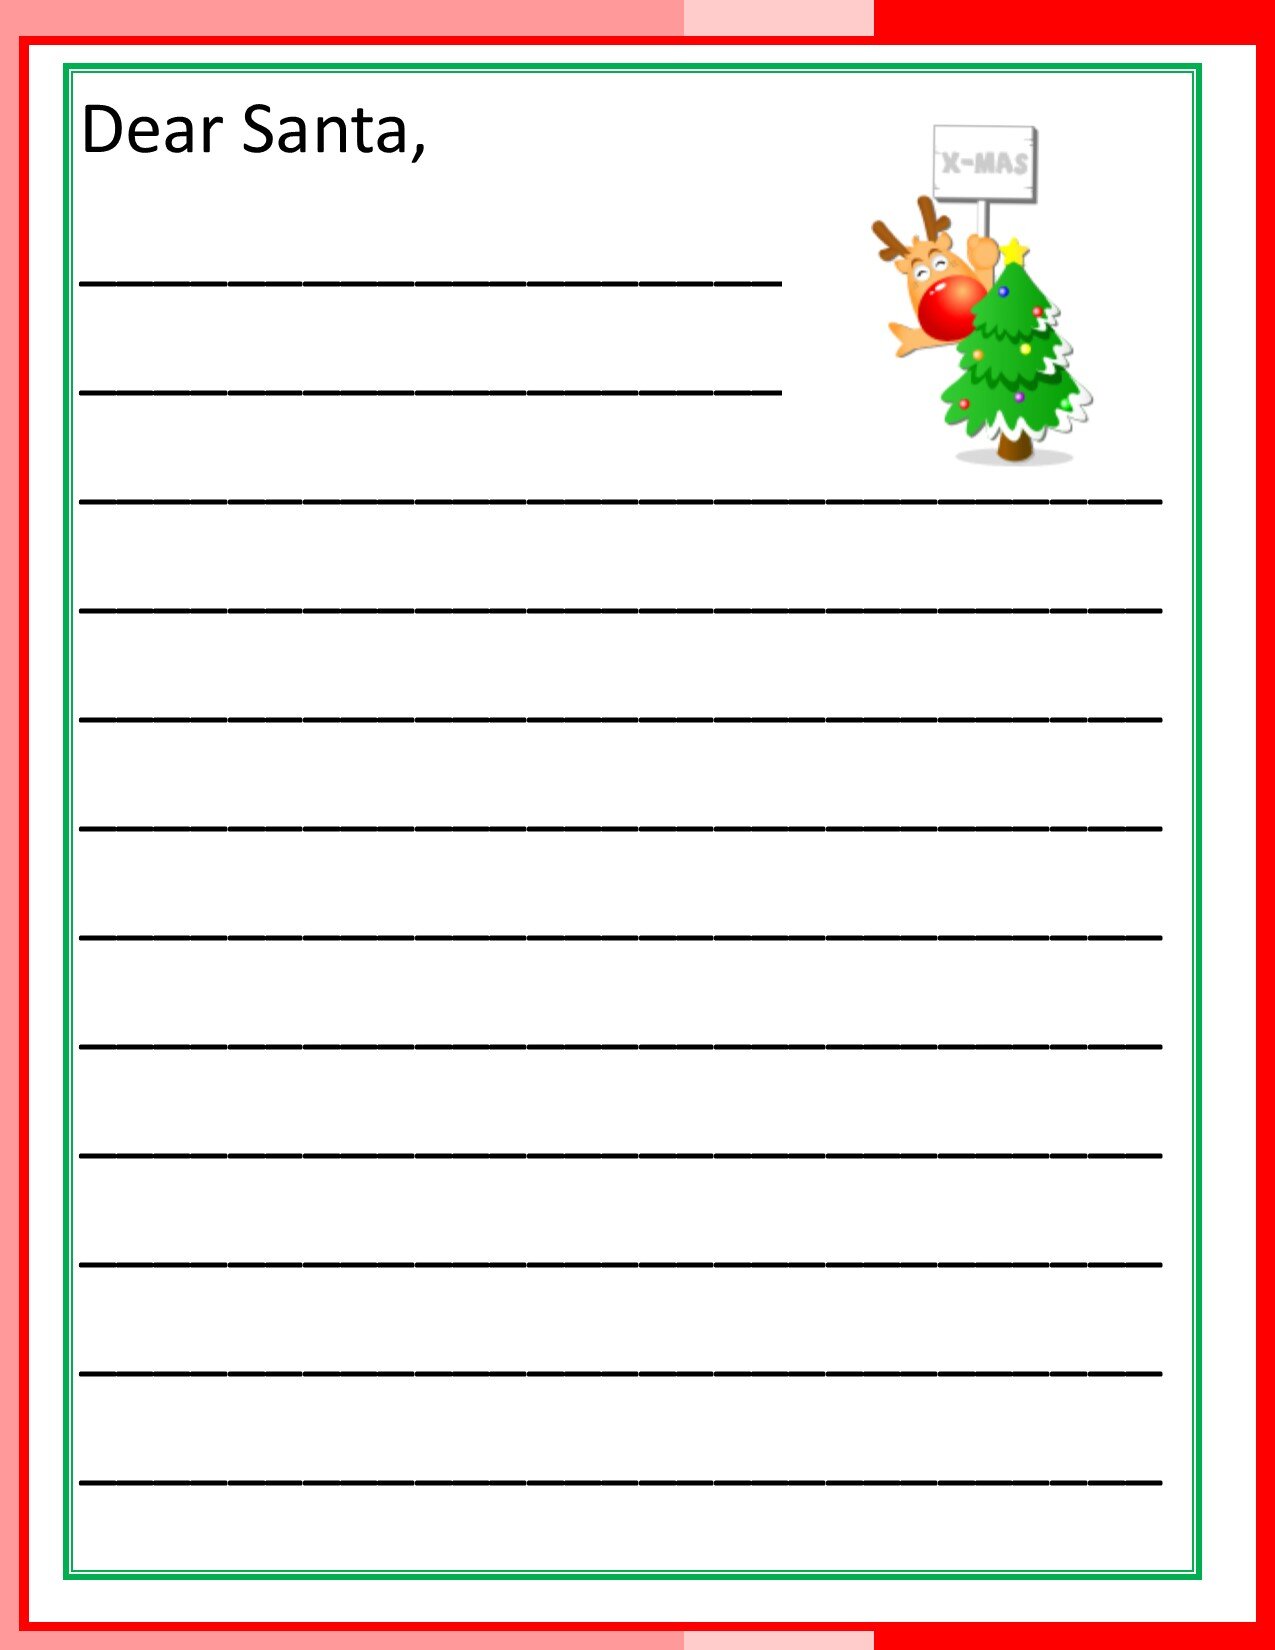 Letters to Santa 6.jpg